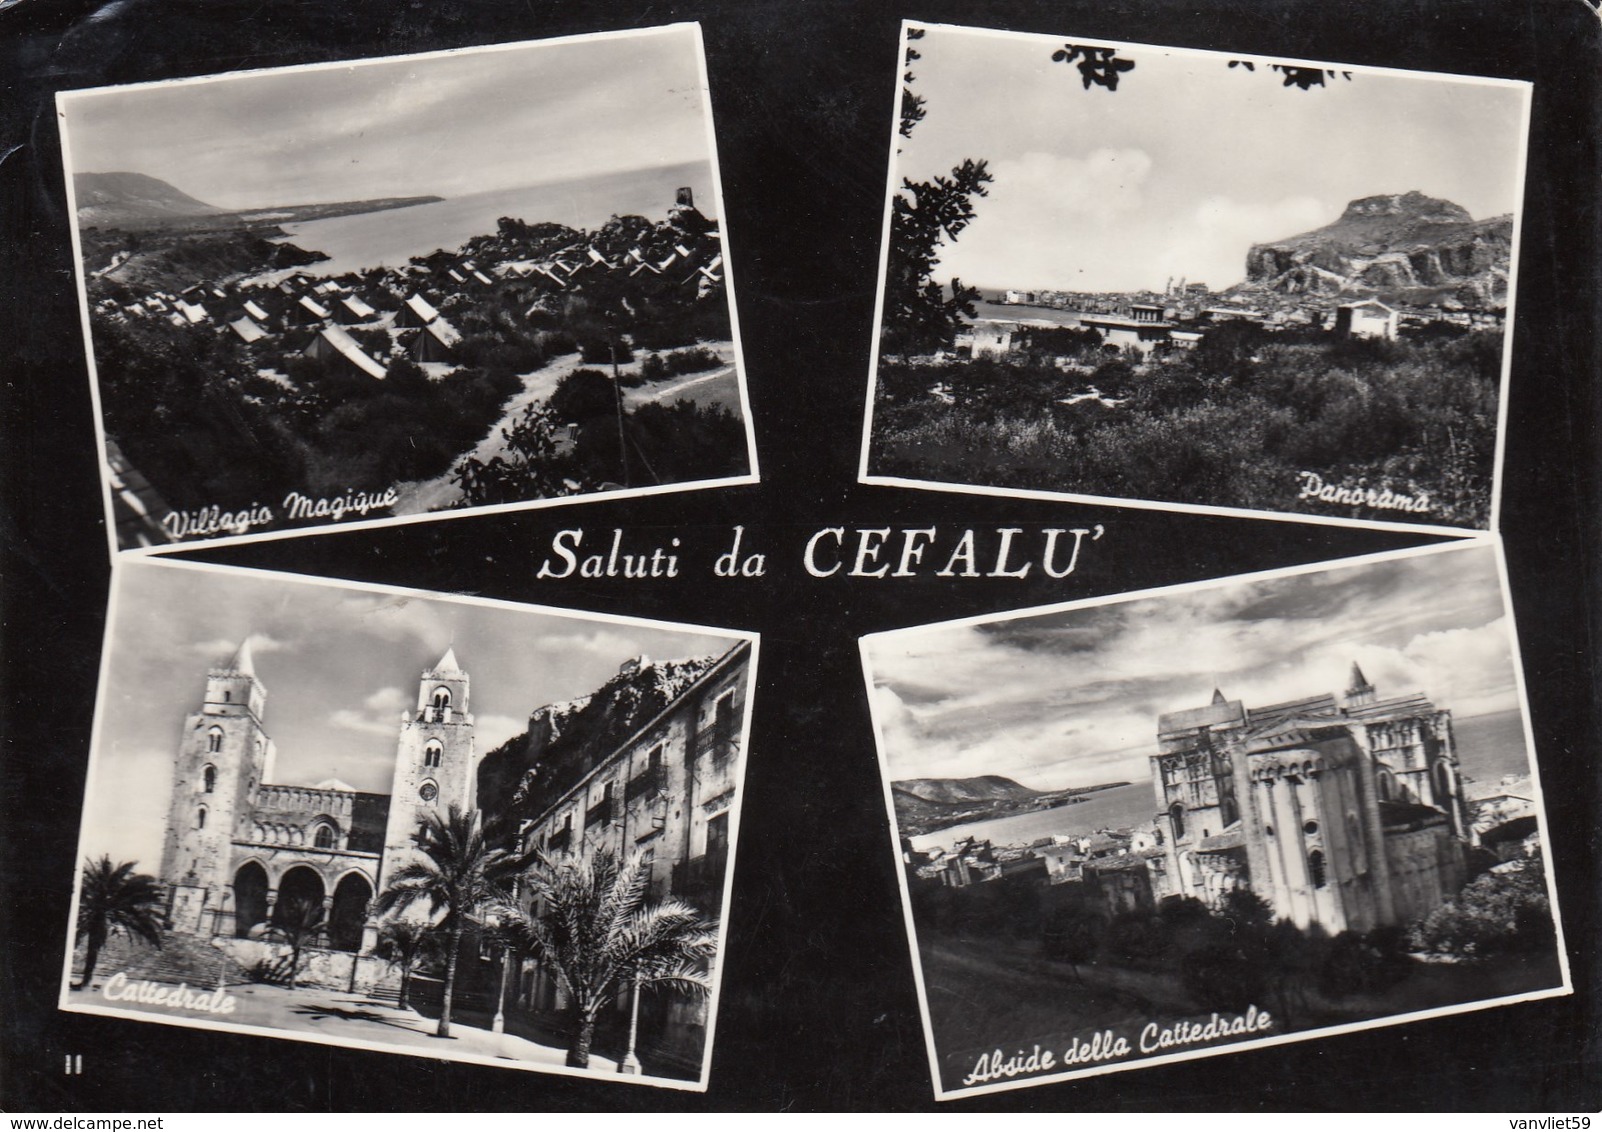 Cefalù-PALERMO-2 CARTOLINE VERA FOTOGRAFIA UNA VIAGGIATA IL 10-10-1958 - Palermo